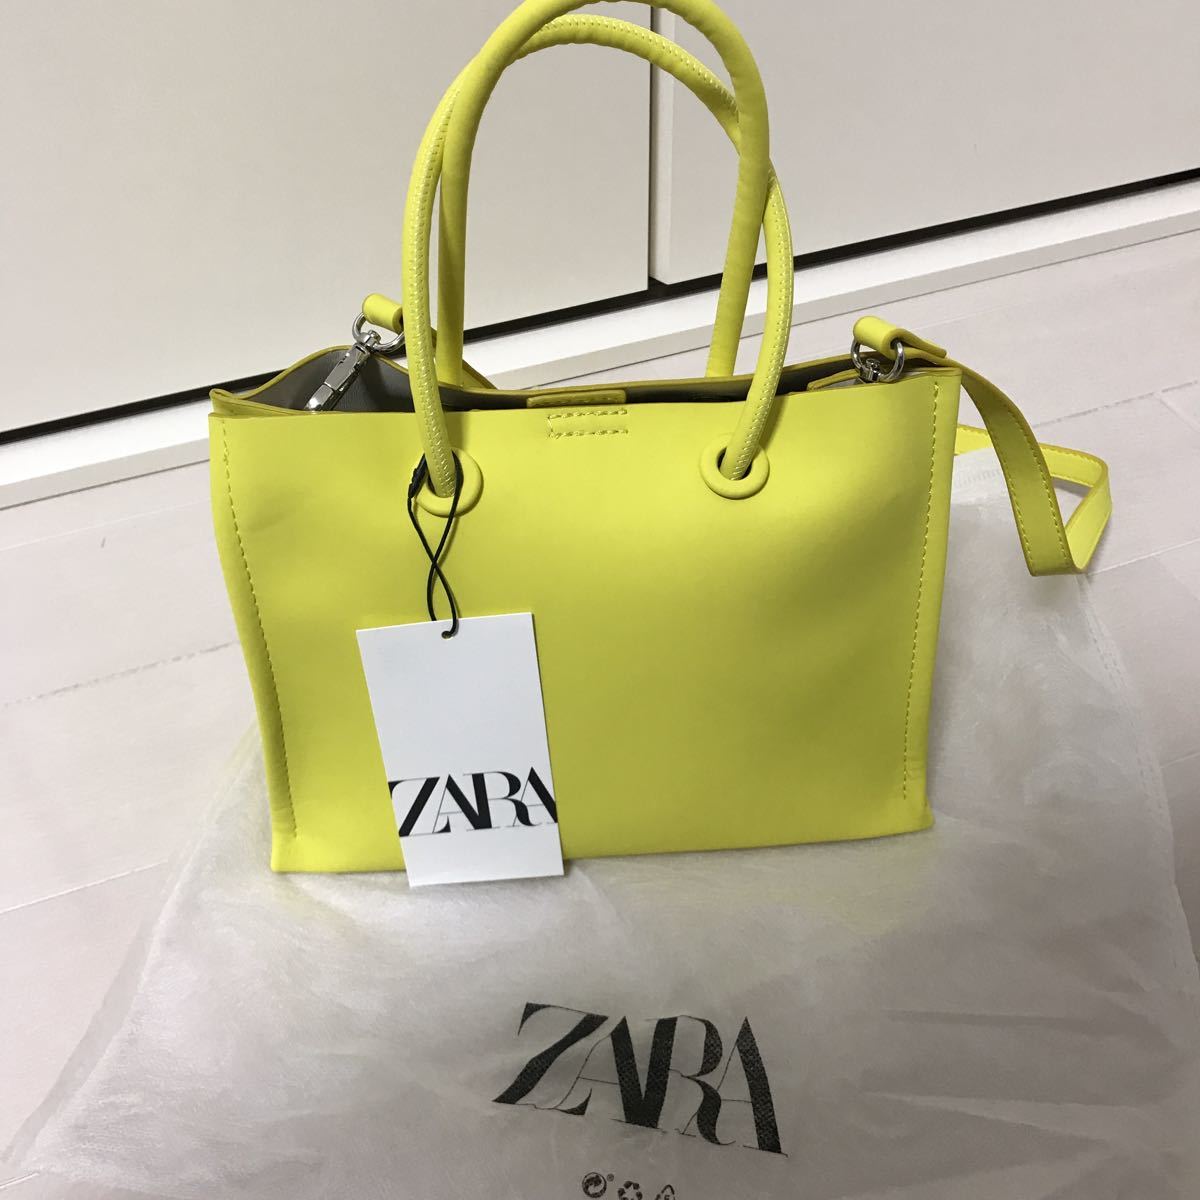  new goods ZARA Mini tote bag shoulder bag 2wayie Rollei m tote bag 20716